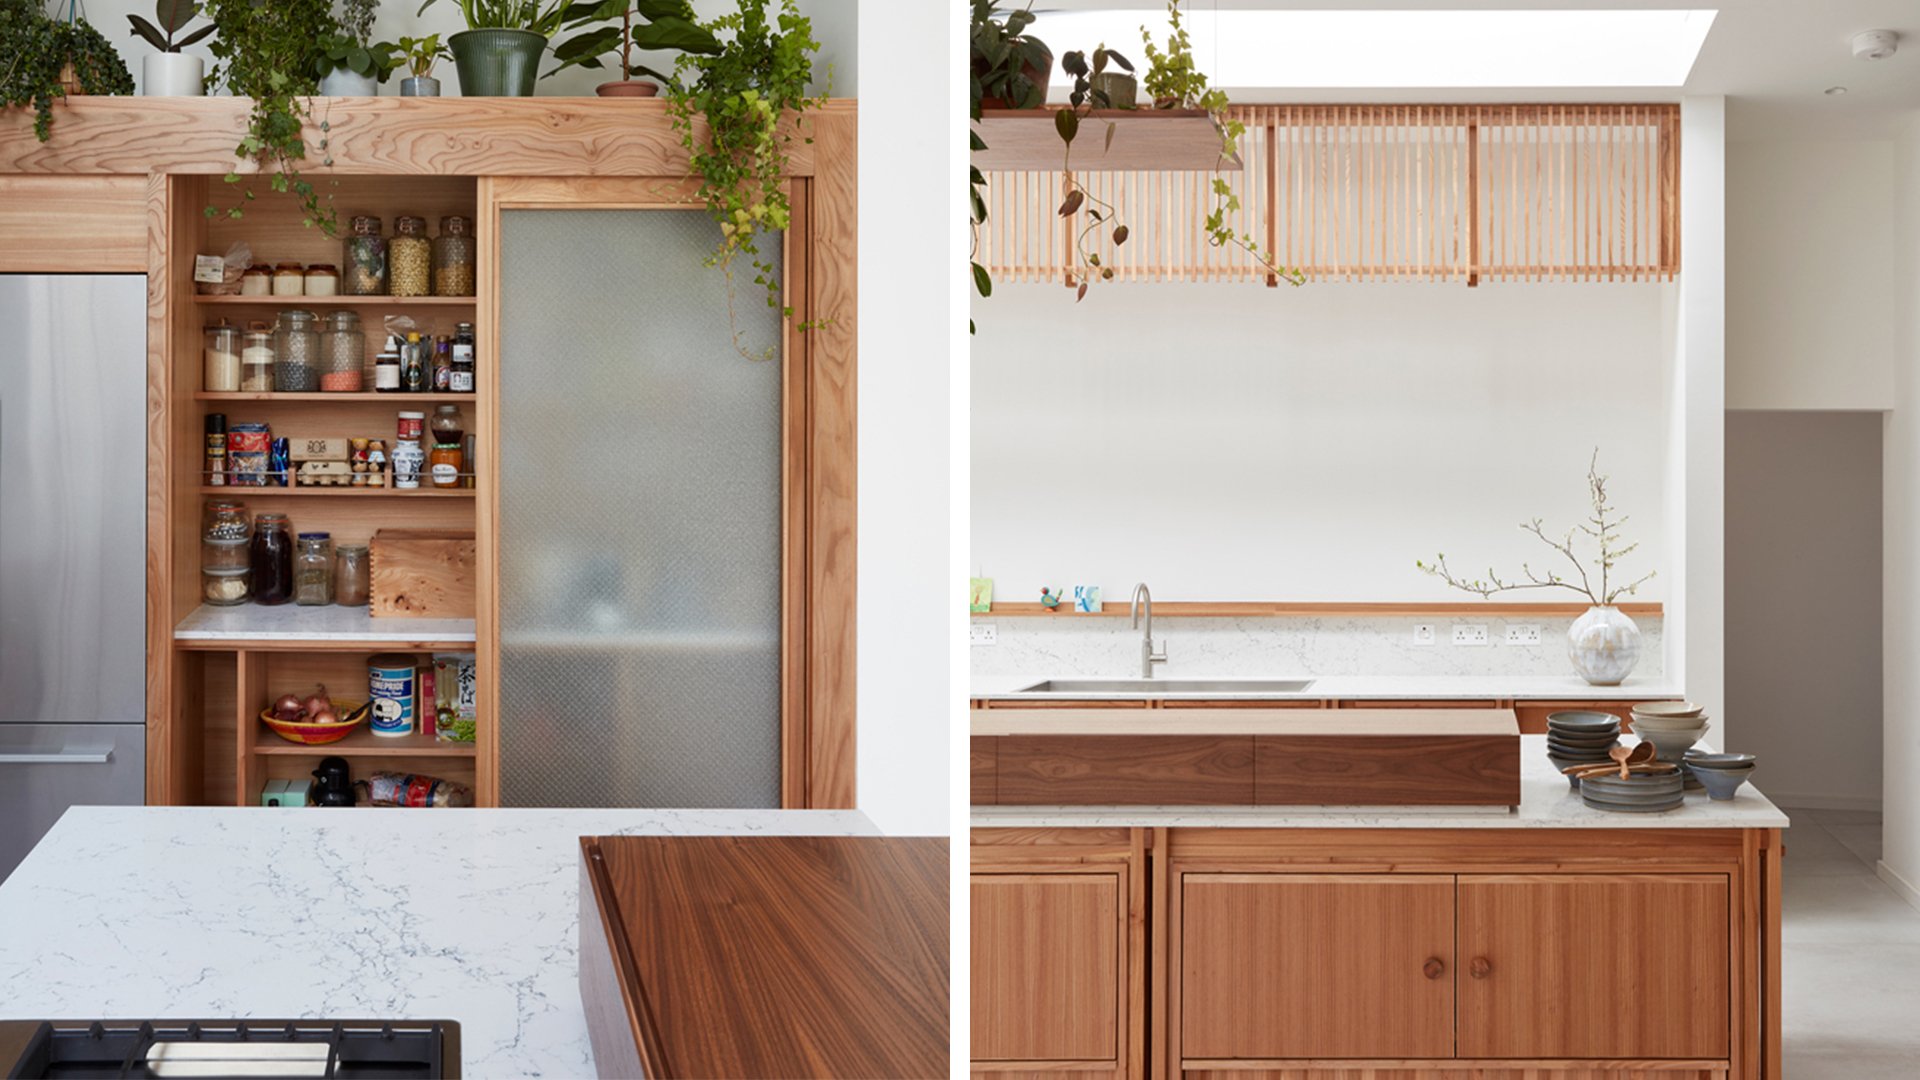 Japanese kitchen design featuring Caesarstone kitchen worktops